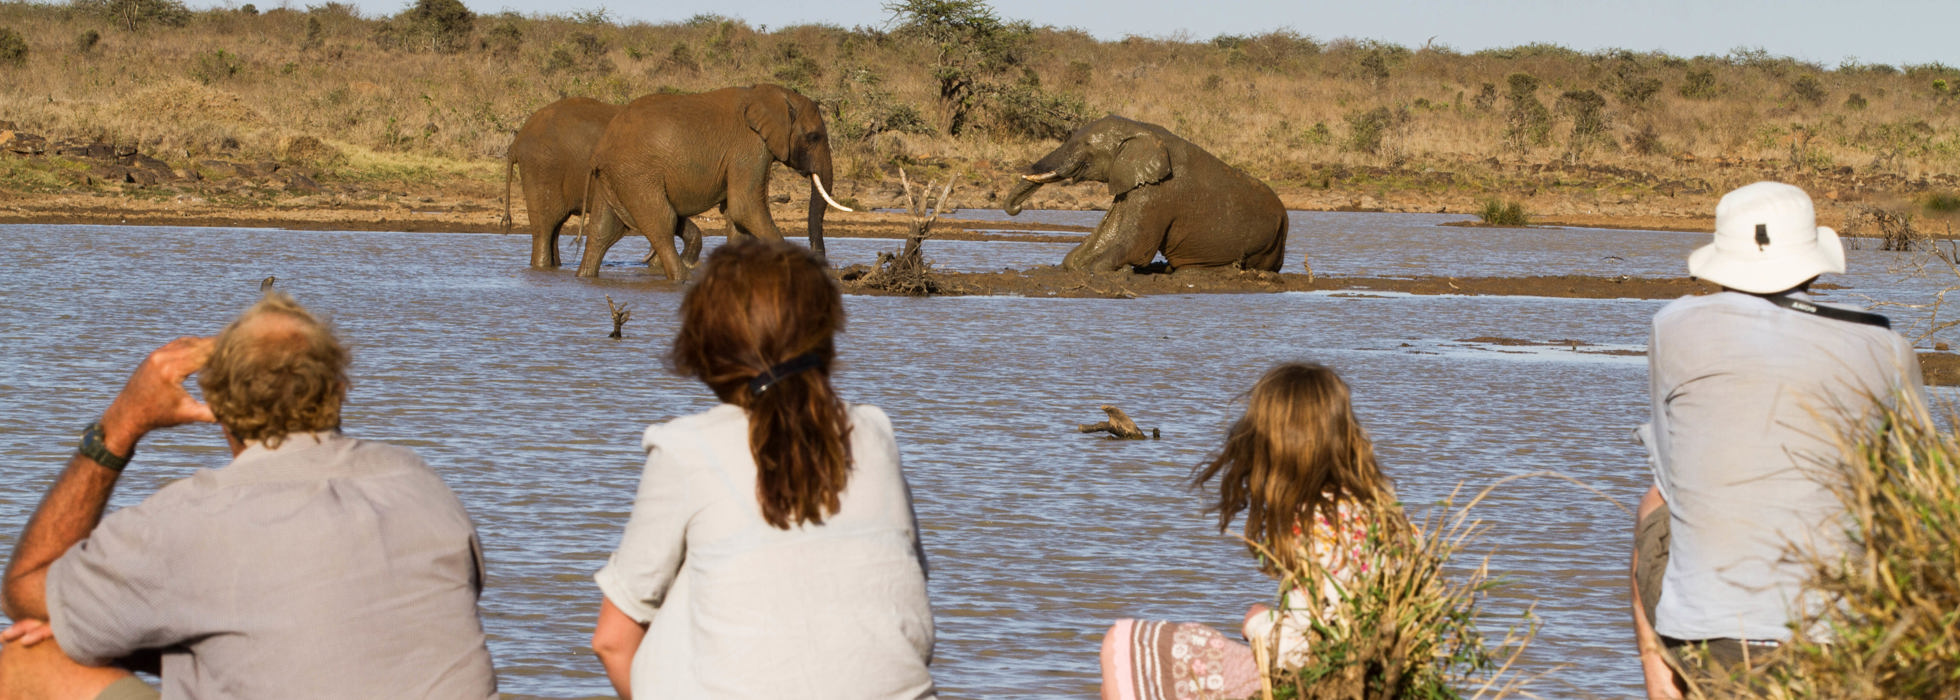 Uganda Safari For and Unforgettable Family Memories - Uganda Family Safari Guide